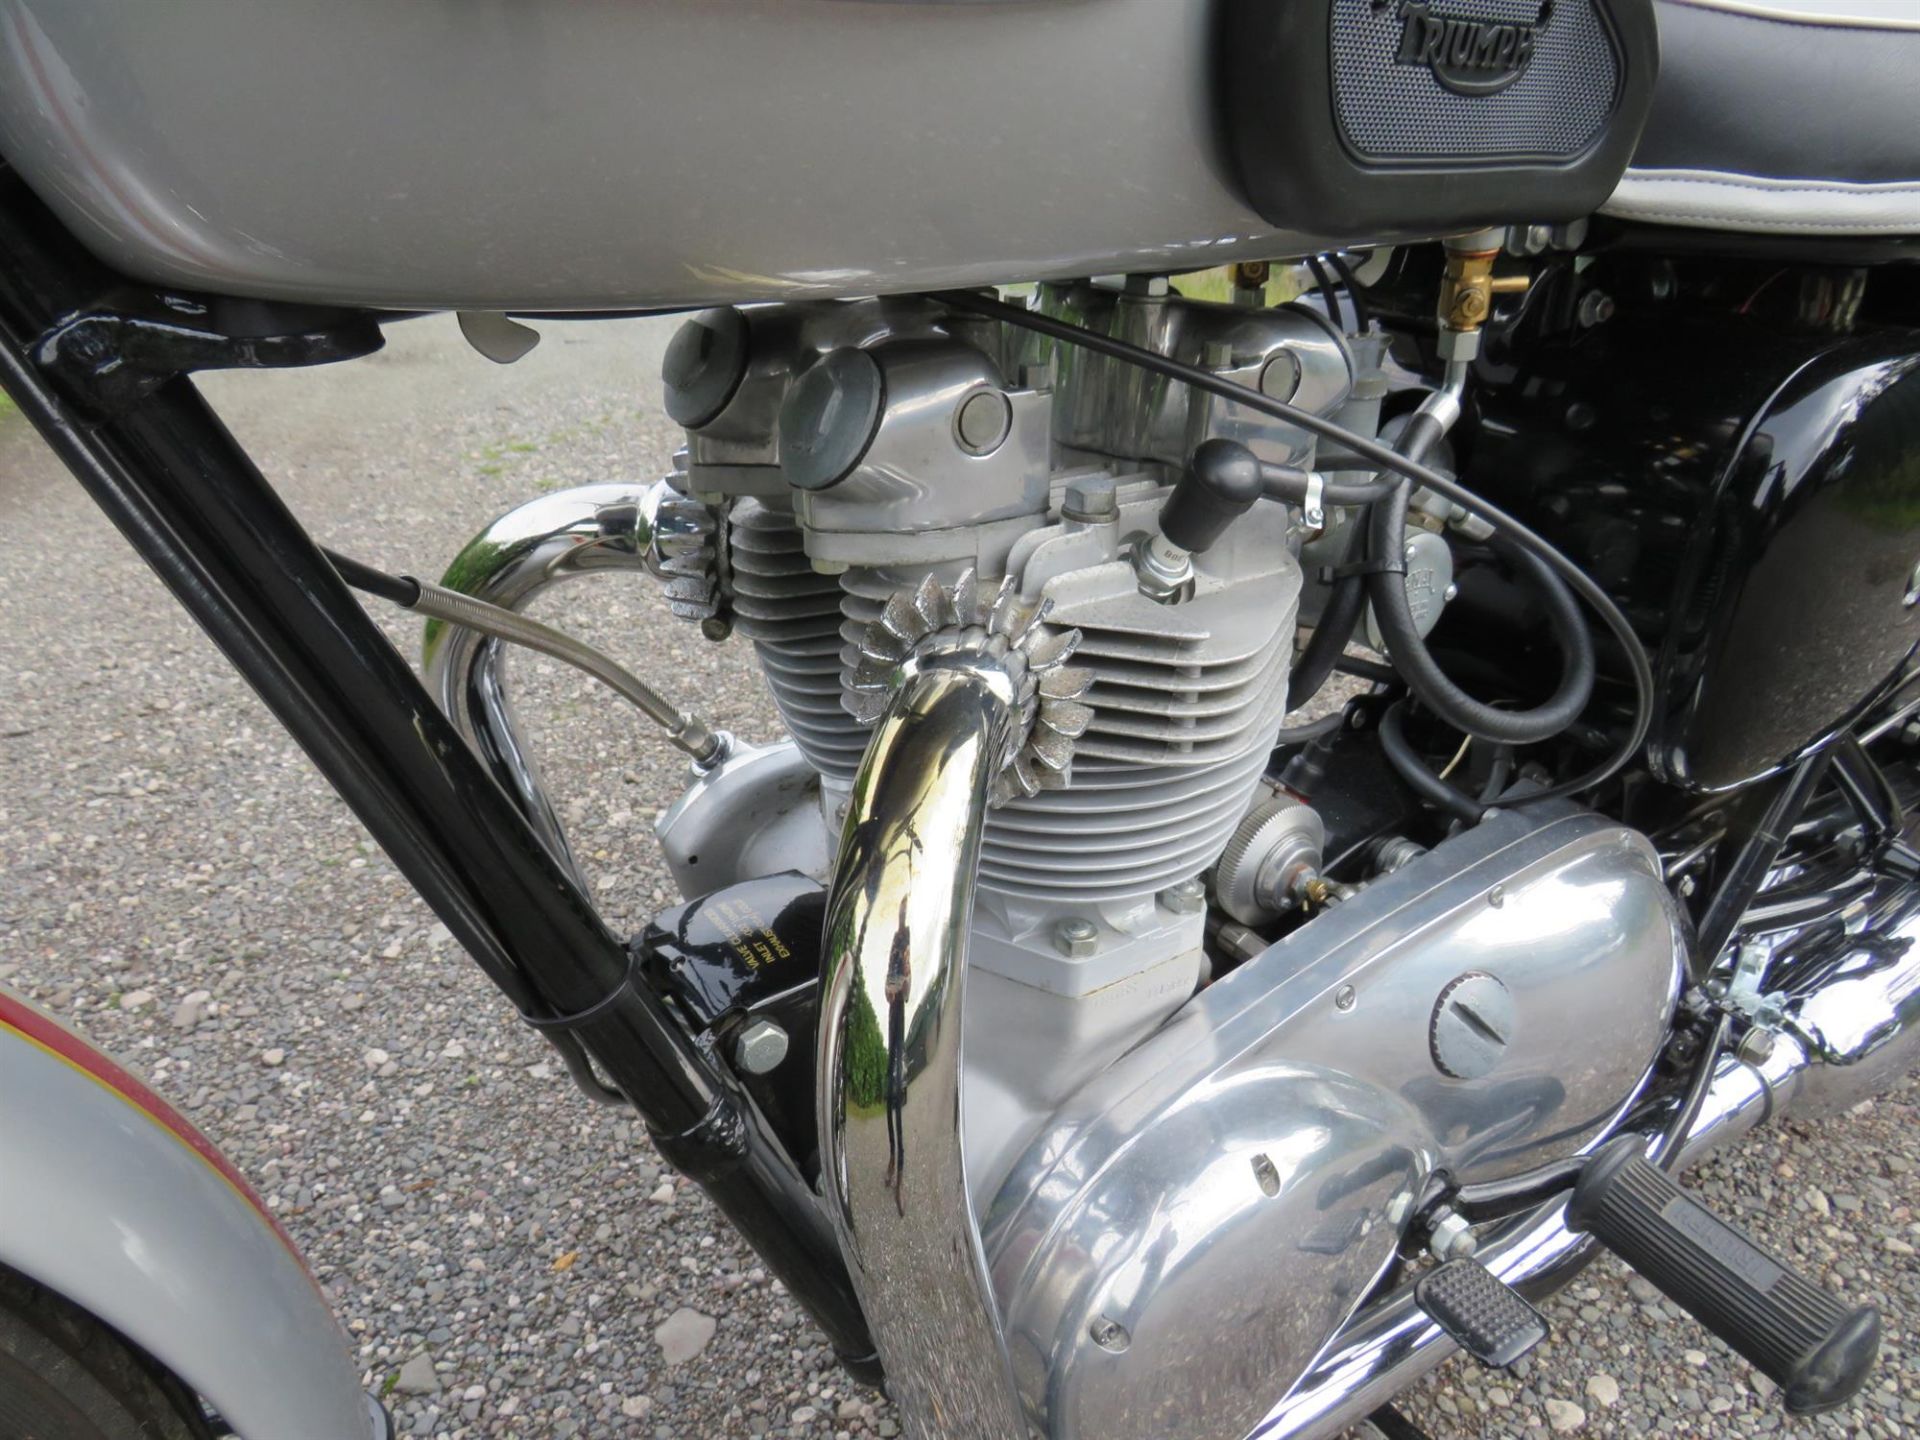 1962 Triumph TR6SS Trophy 649cc - Image 6 of 10